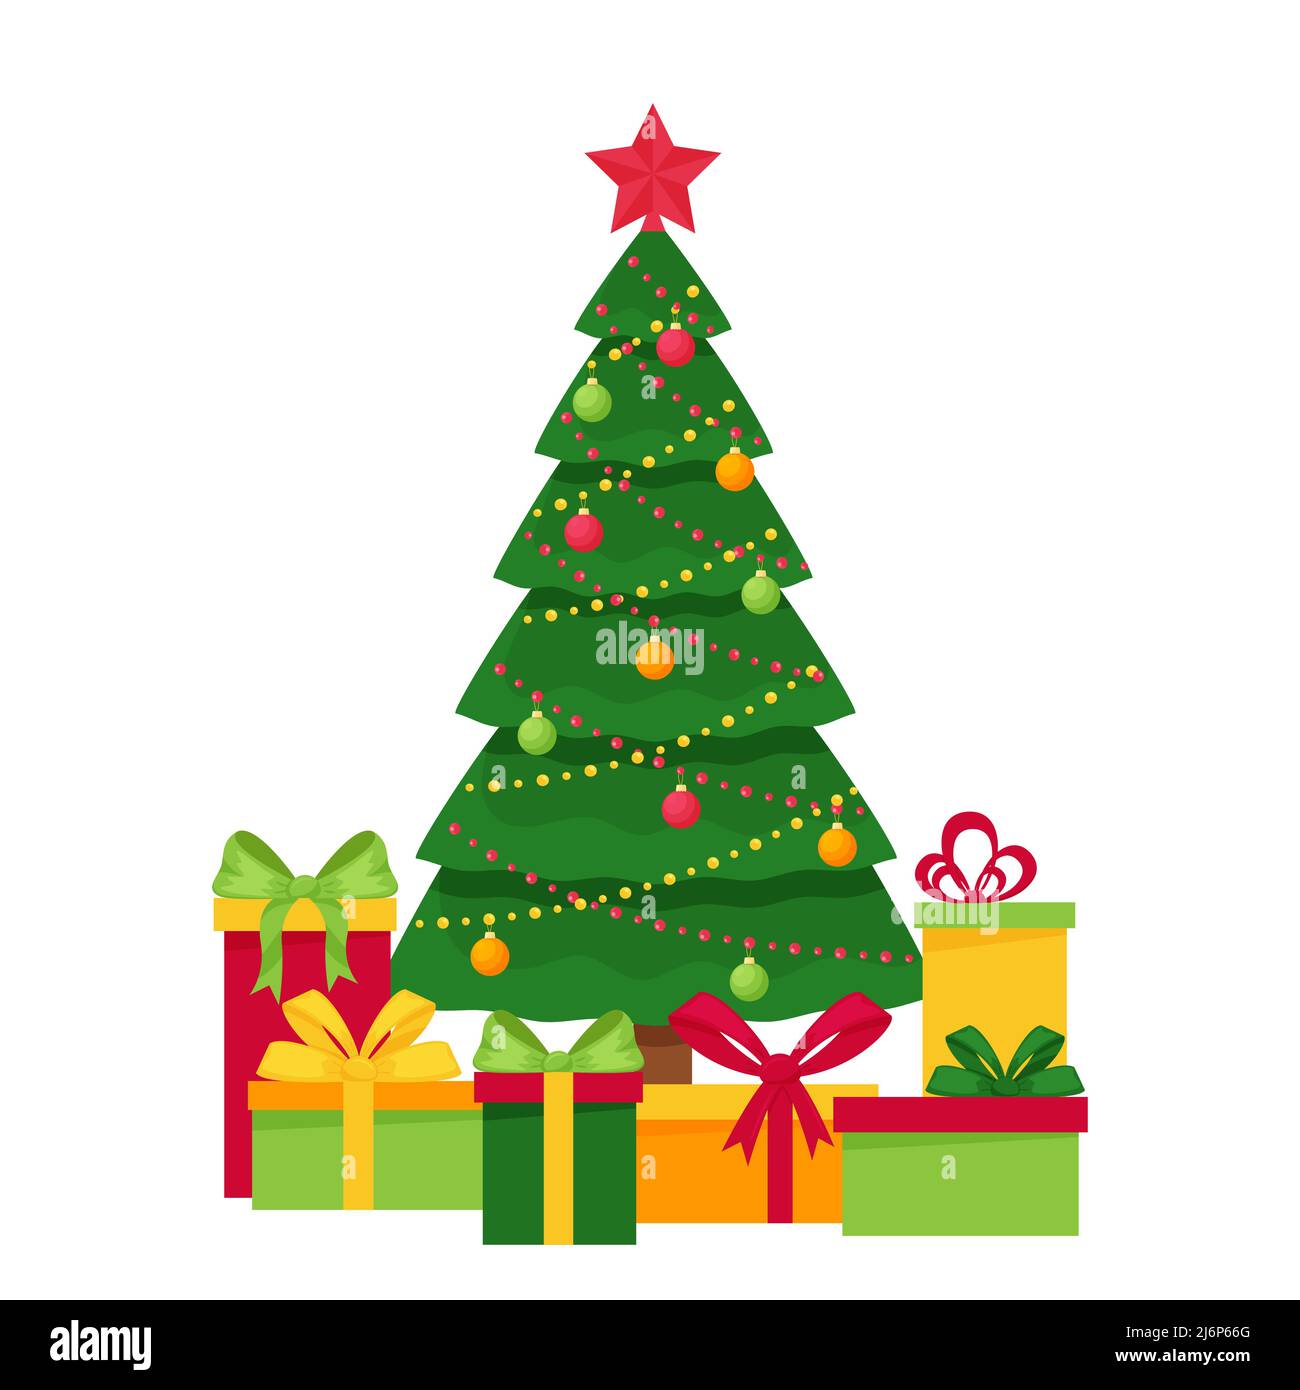 Geschmückter Weihnachtsbaum mit Spielzeug, Girlande und Stern.Geschenkboxen unter dem Baum. Element von Weihnachten und Neujahr-Design. Postkarte Vorlage. Vektor Stock Vektor